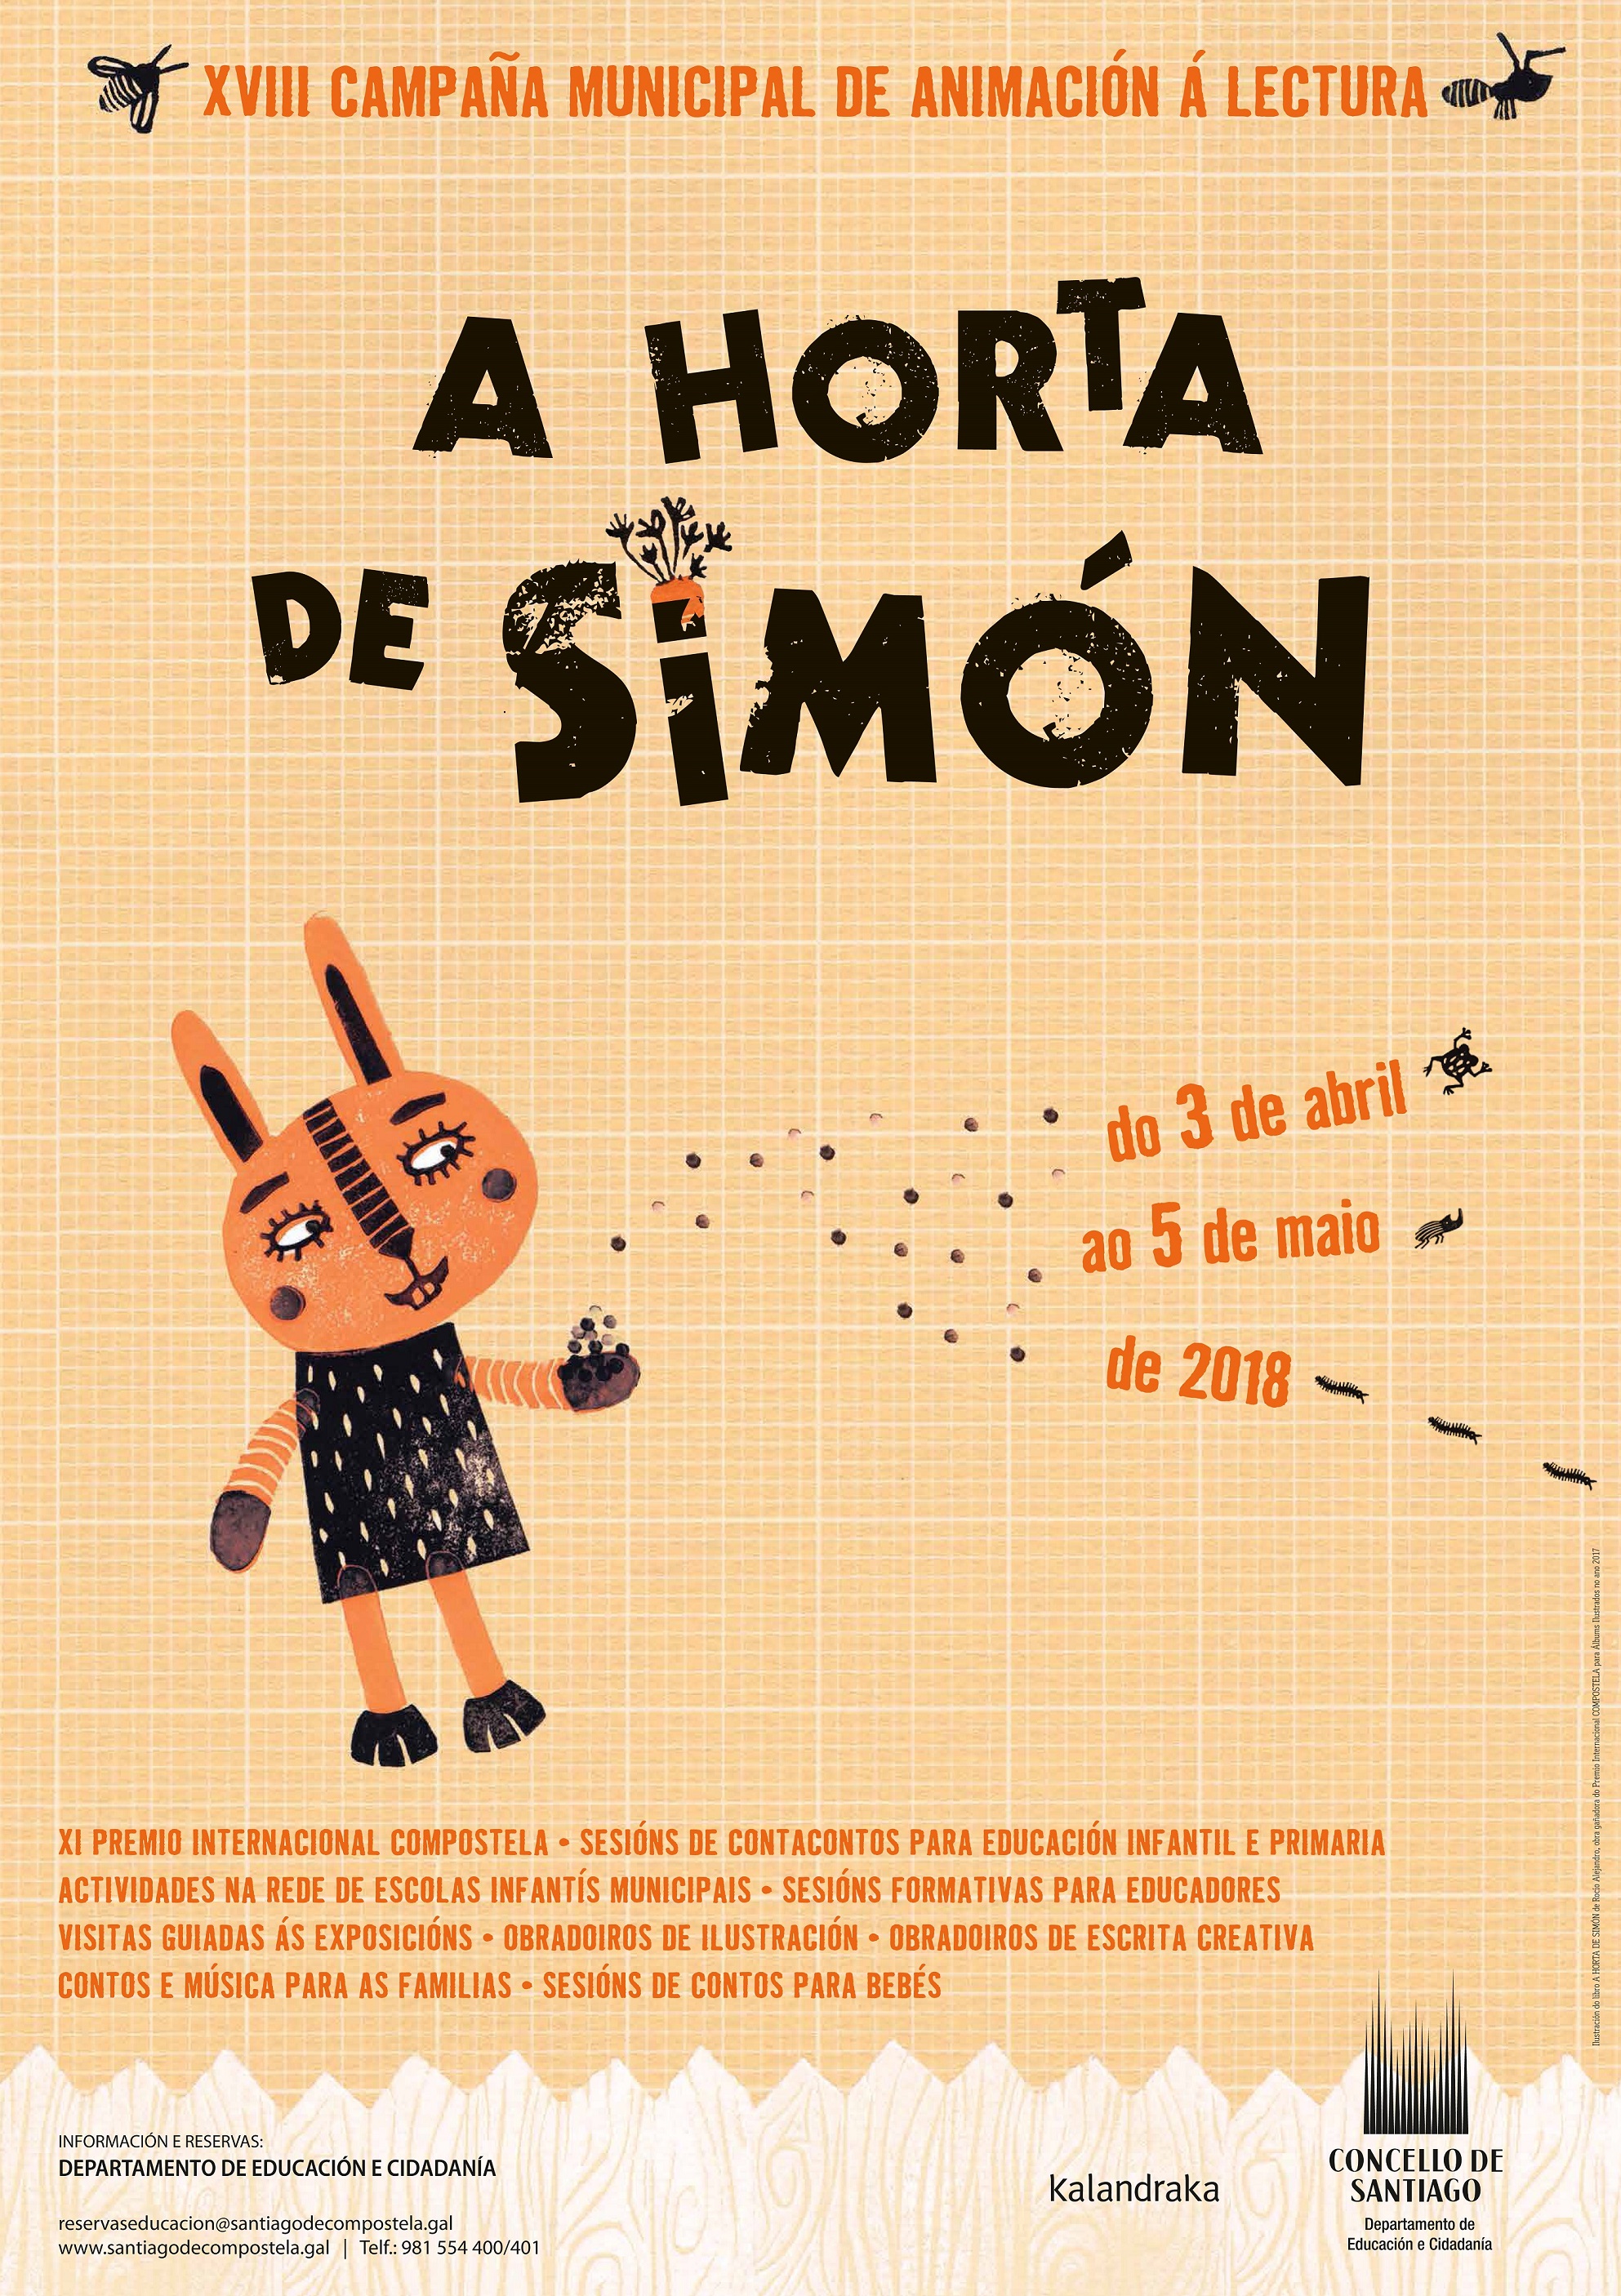 Cartel promocional da XVIII Campaña Municipal de Animación á Lectura.